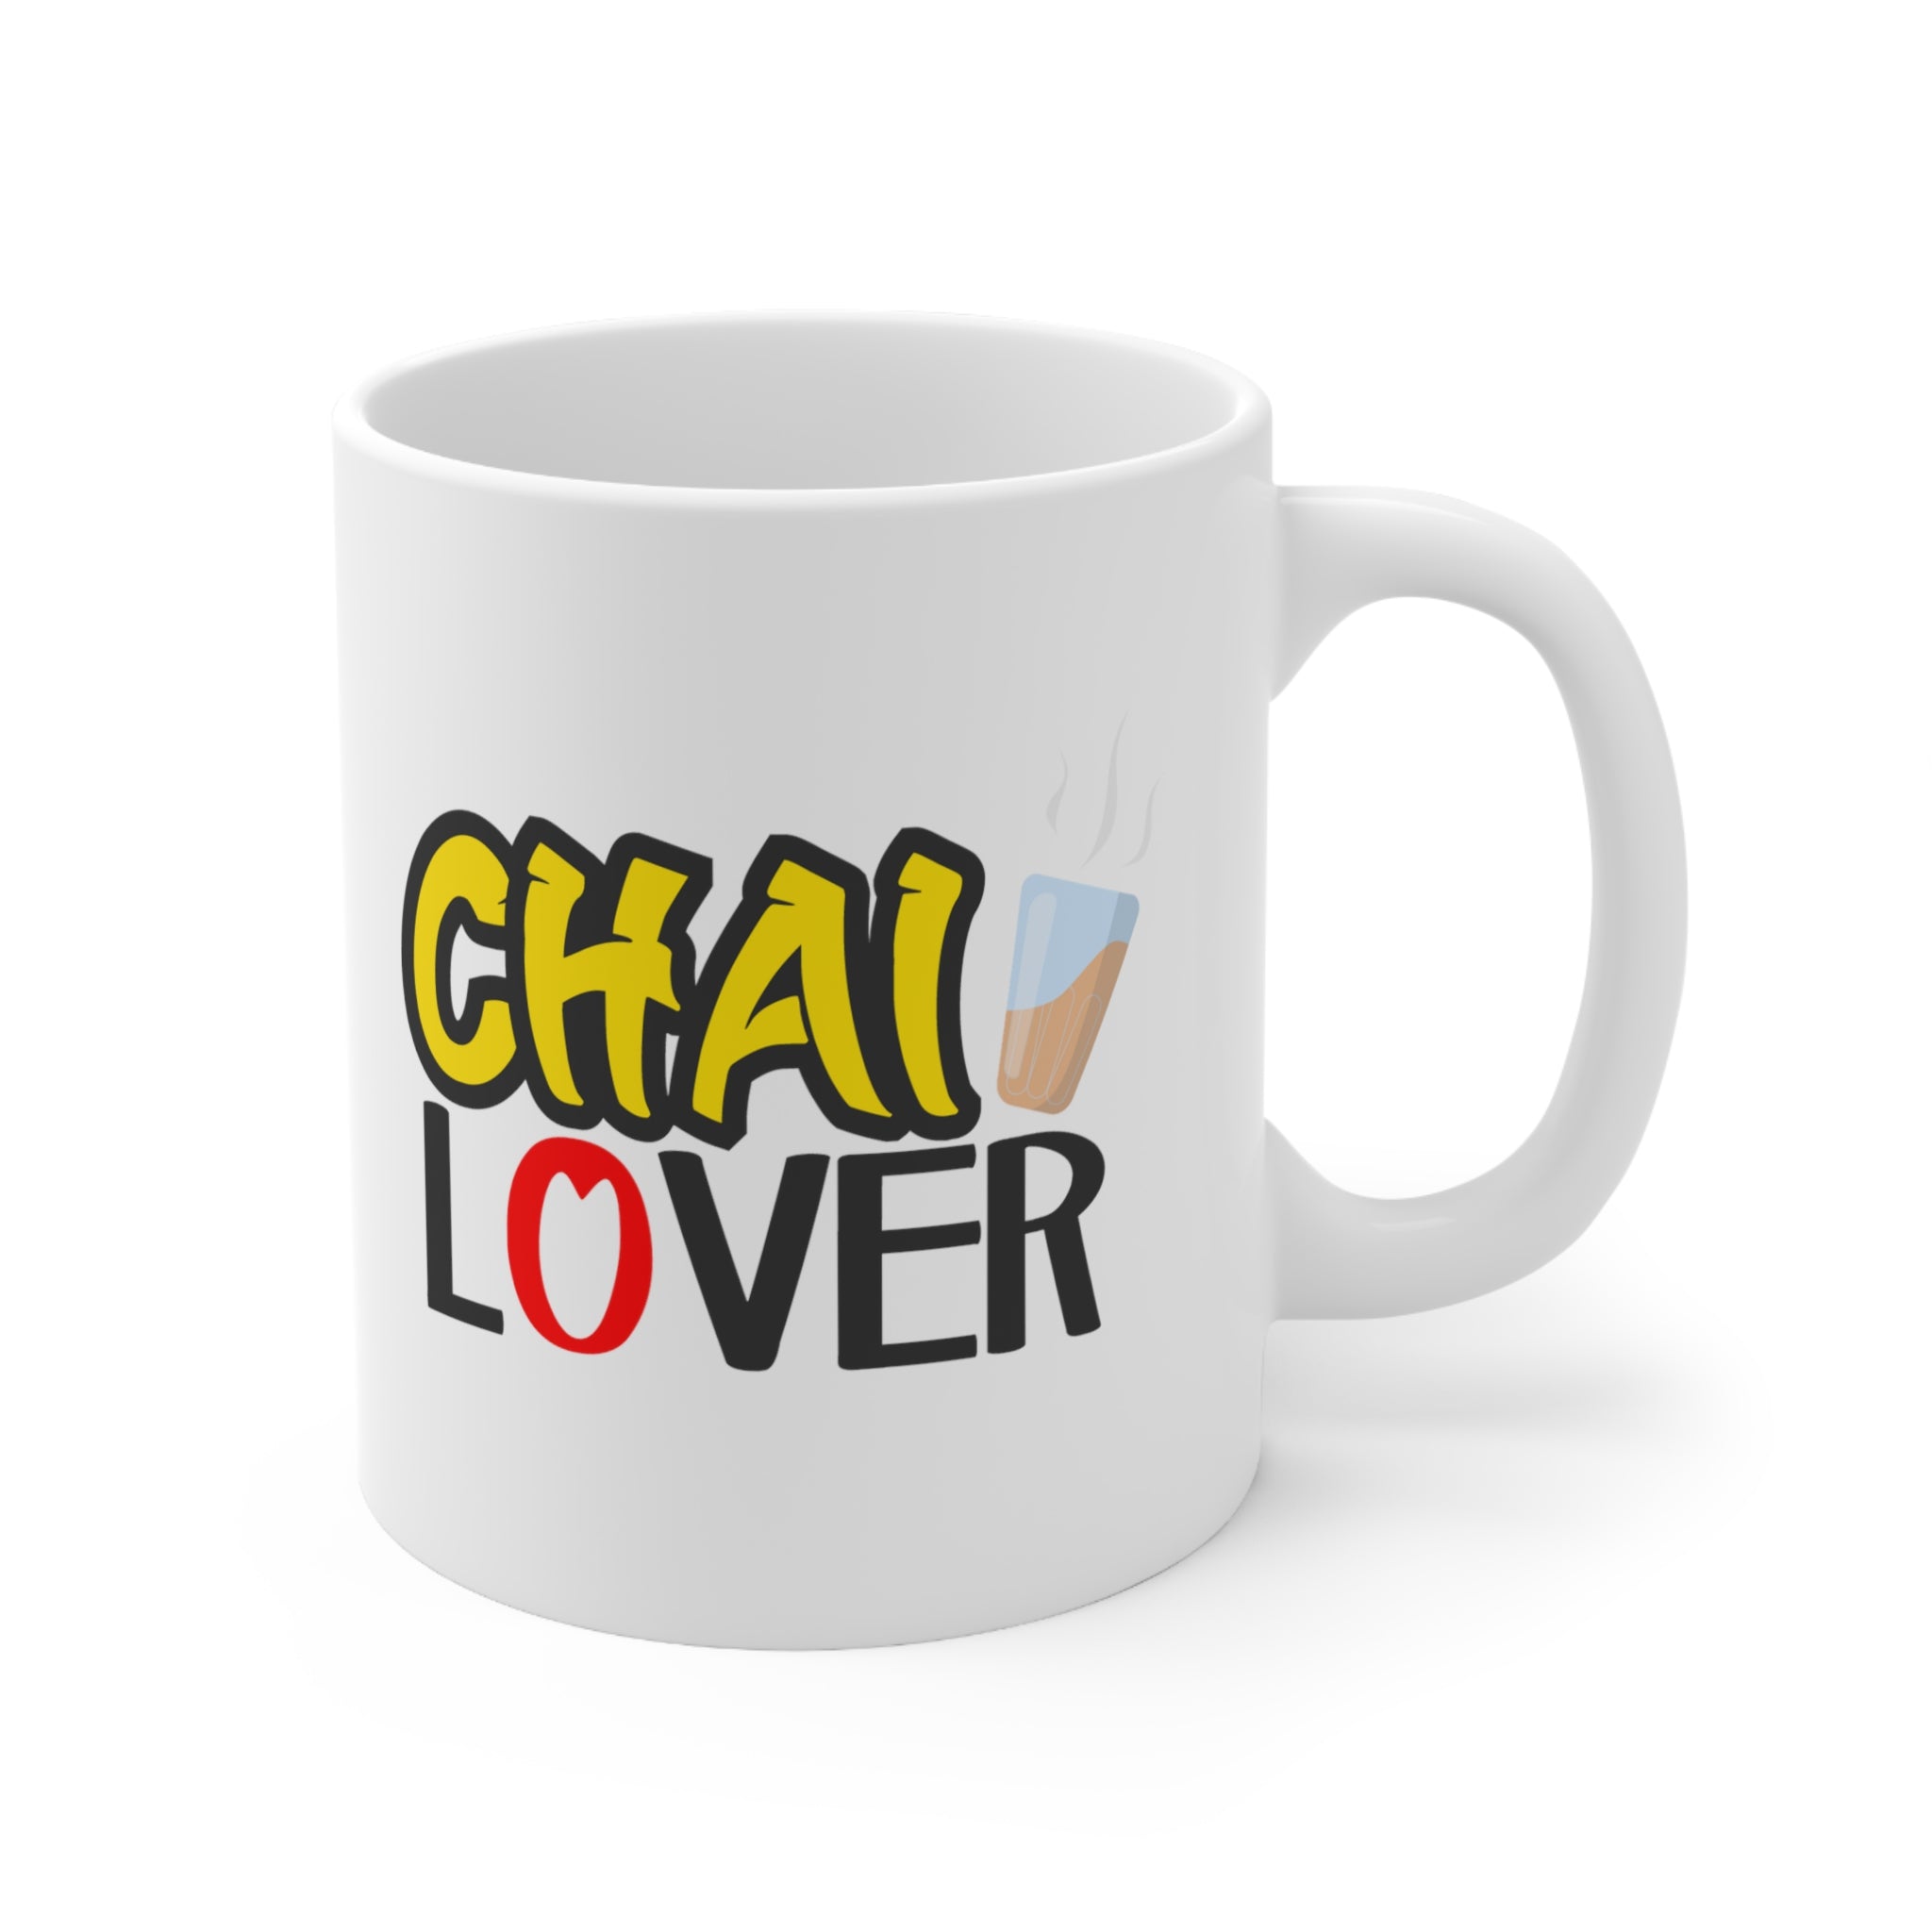 Chai Lover Ceramic Mug 11oz